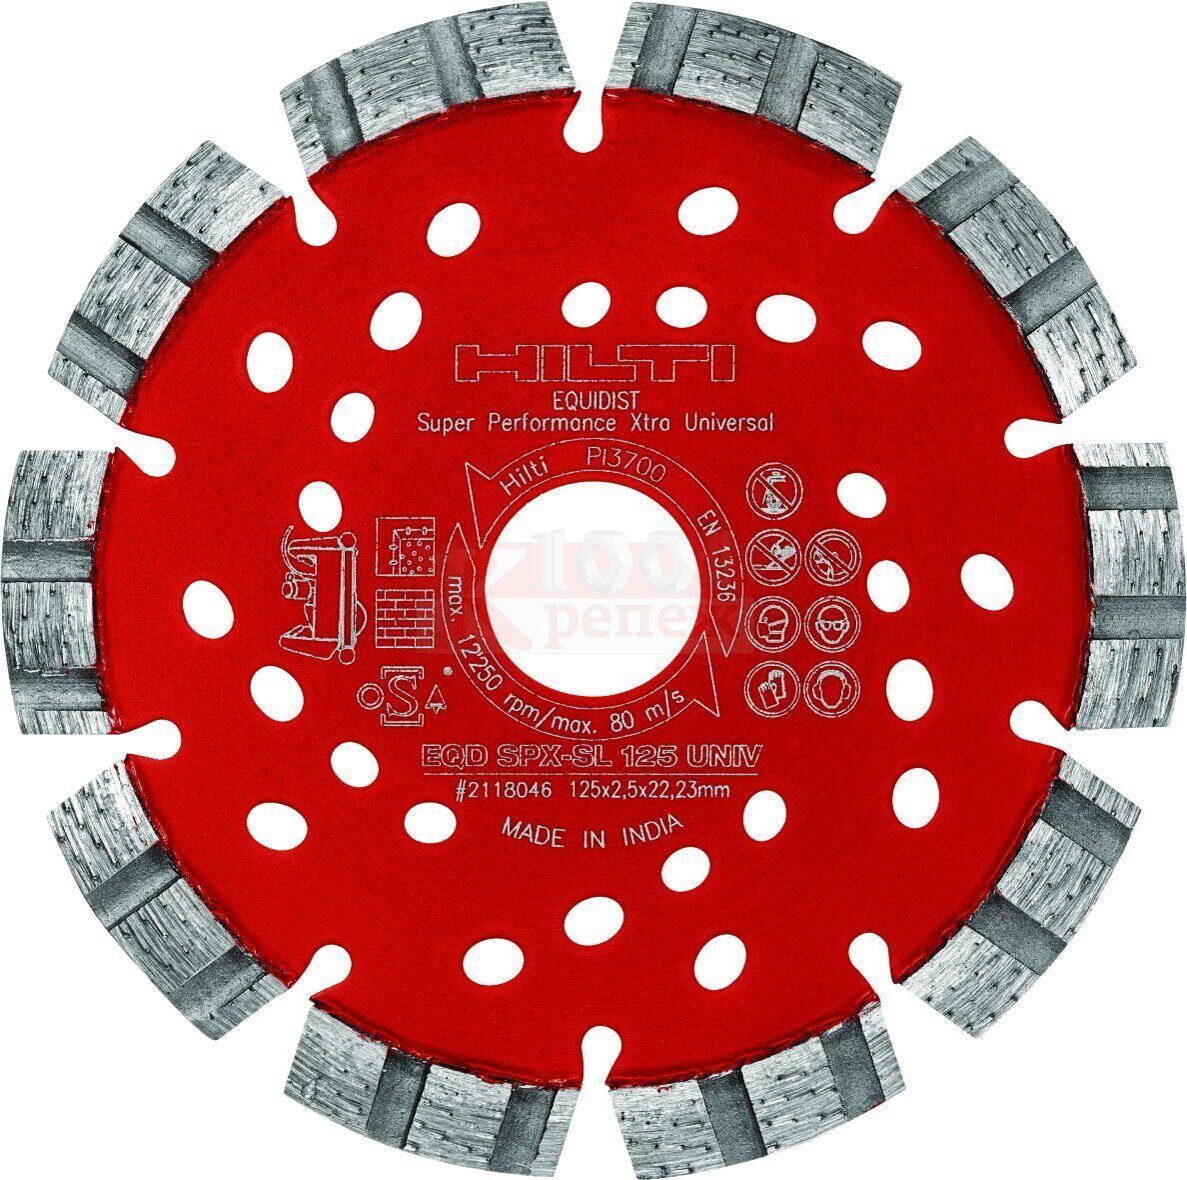 Отрезной диск EQD SPX-SL125 (2) универса, Артикул 2118046H HILTI